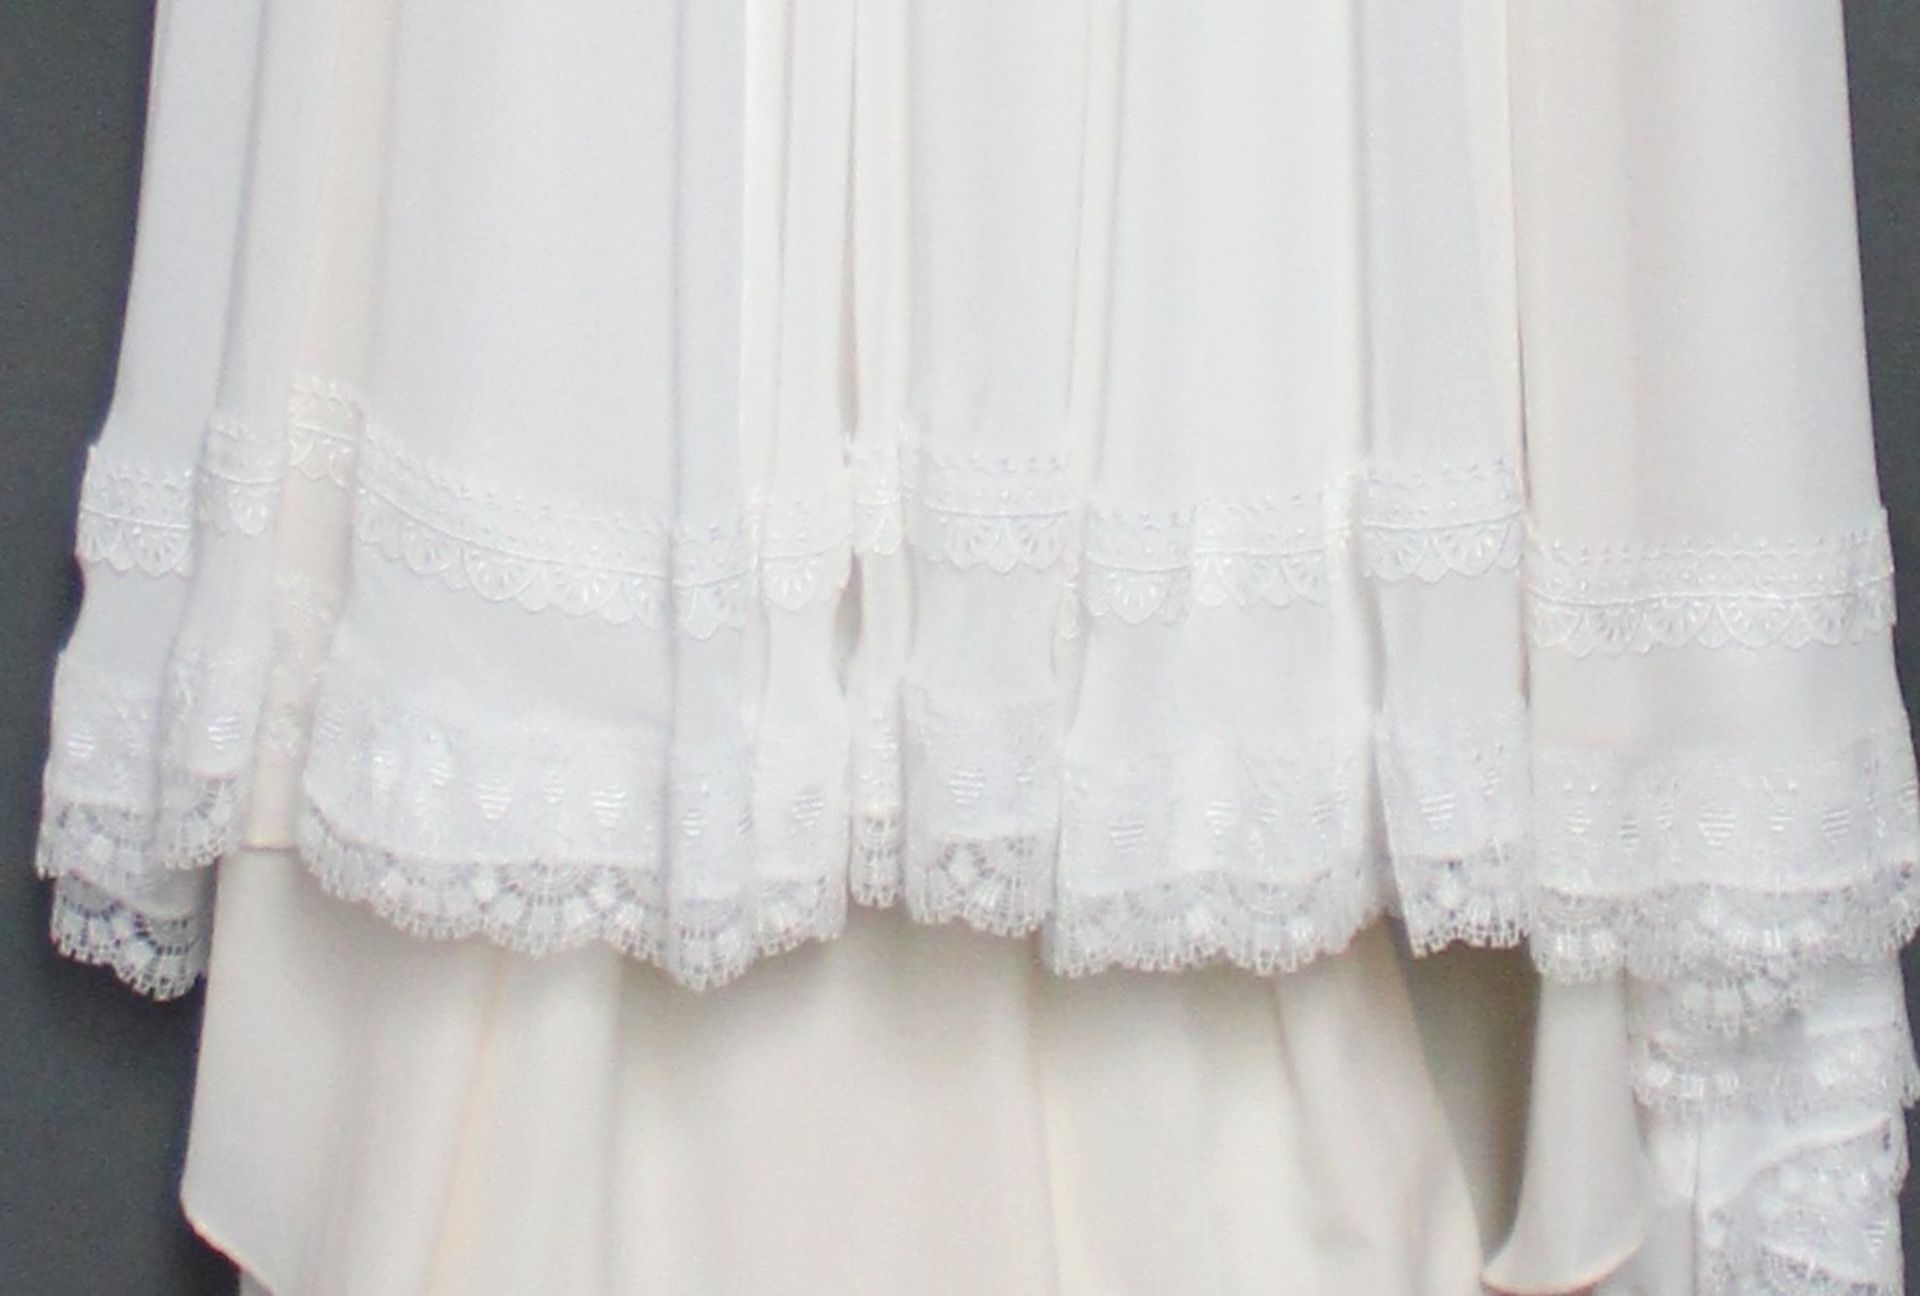 1 x DIANE LE GRAND Lace Off The Shoulder Designer Wedding Dress RRP £1,400 UK10 - Image 4 of 6